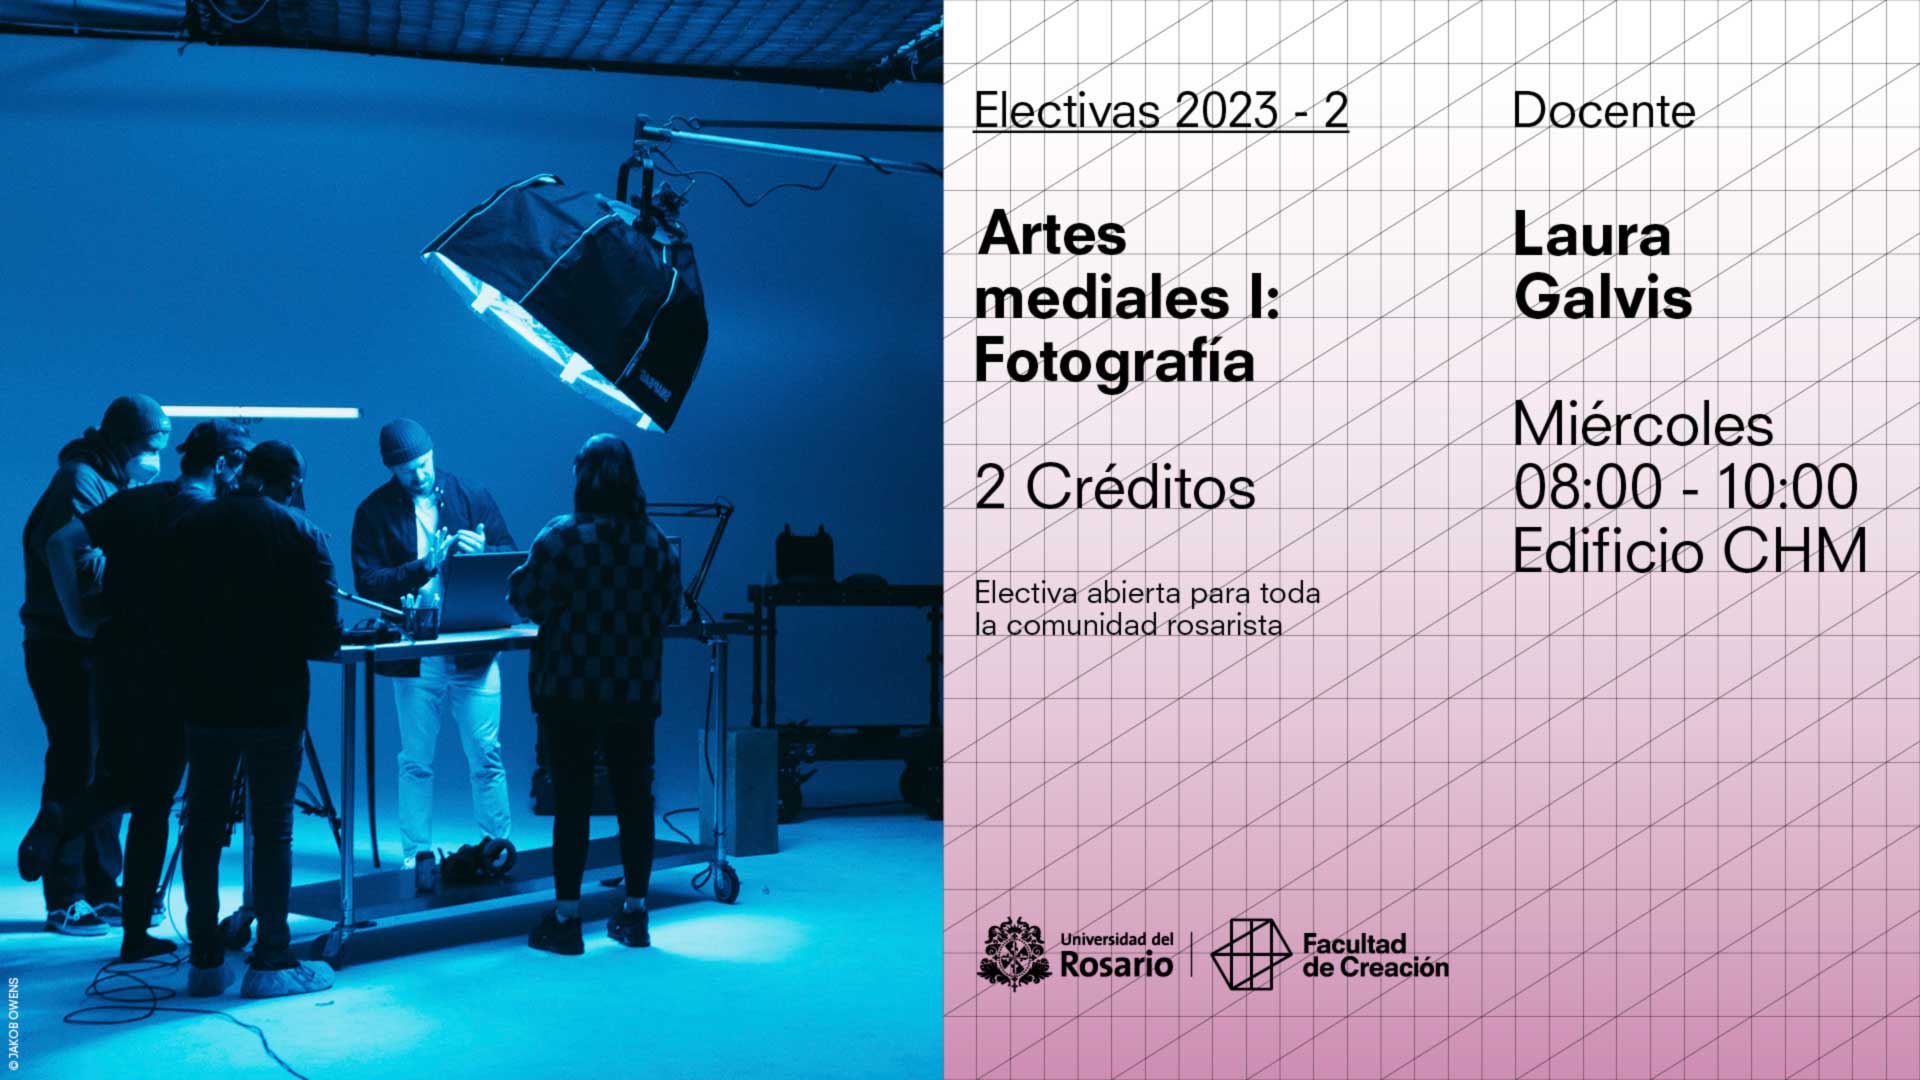 Artes mediales I: Fotografía